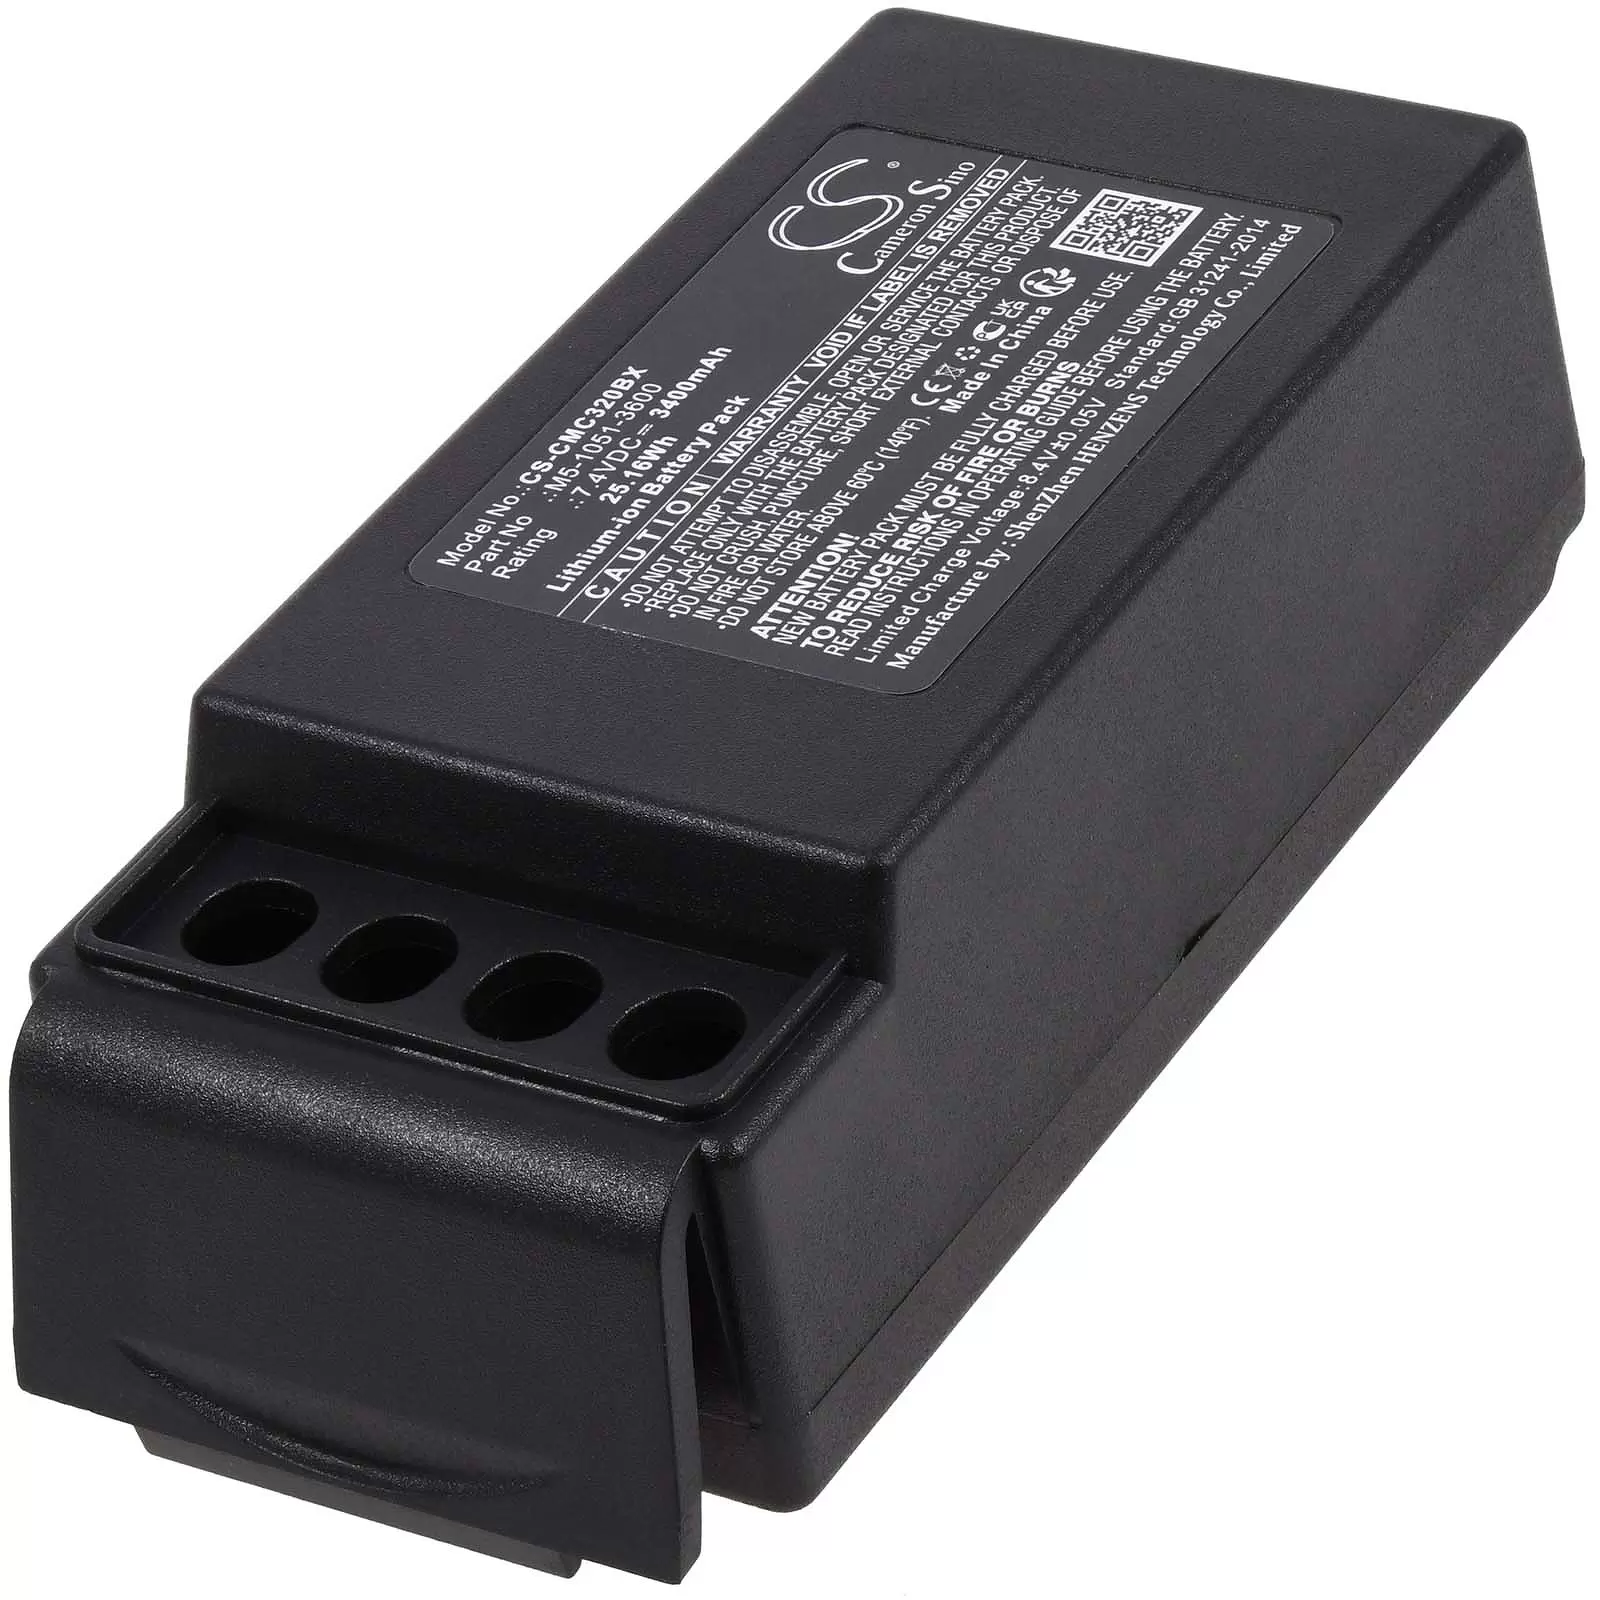 Powerakku passend für Kran-Funkfernsteuerung Cavotec MC-3000,MC-3, Typ M5-1051-3600, nur 2 Kontakte